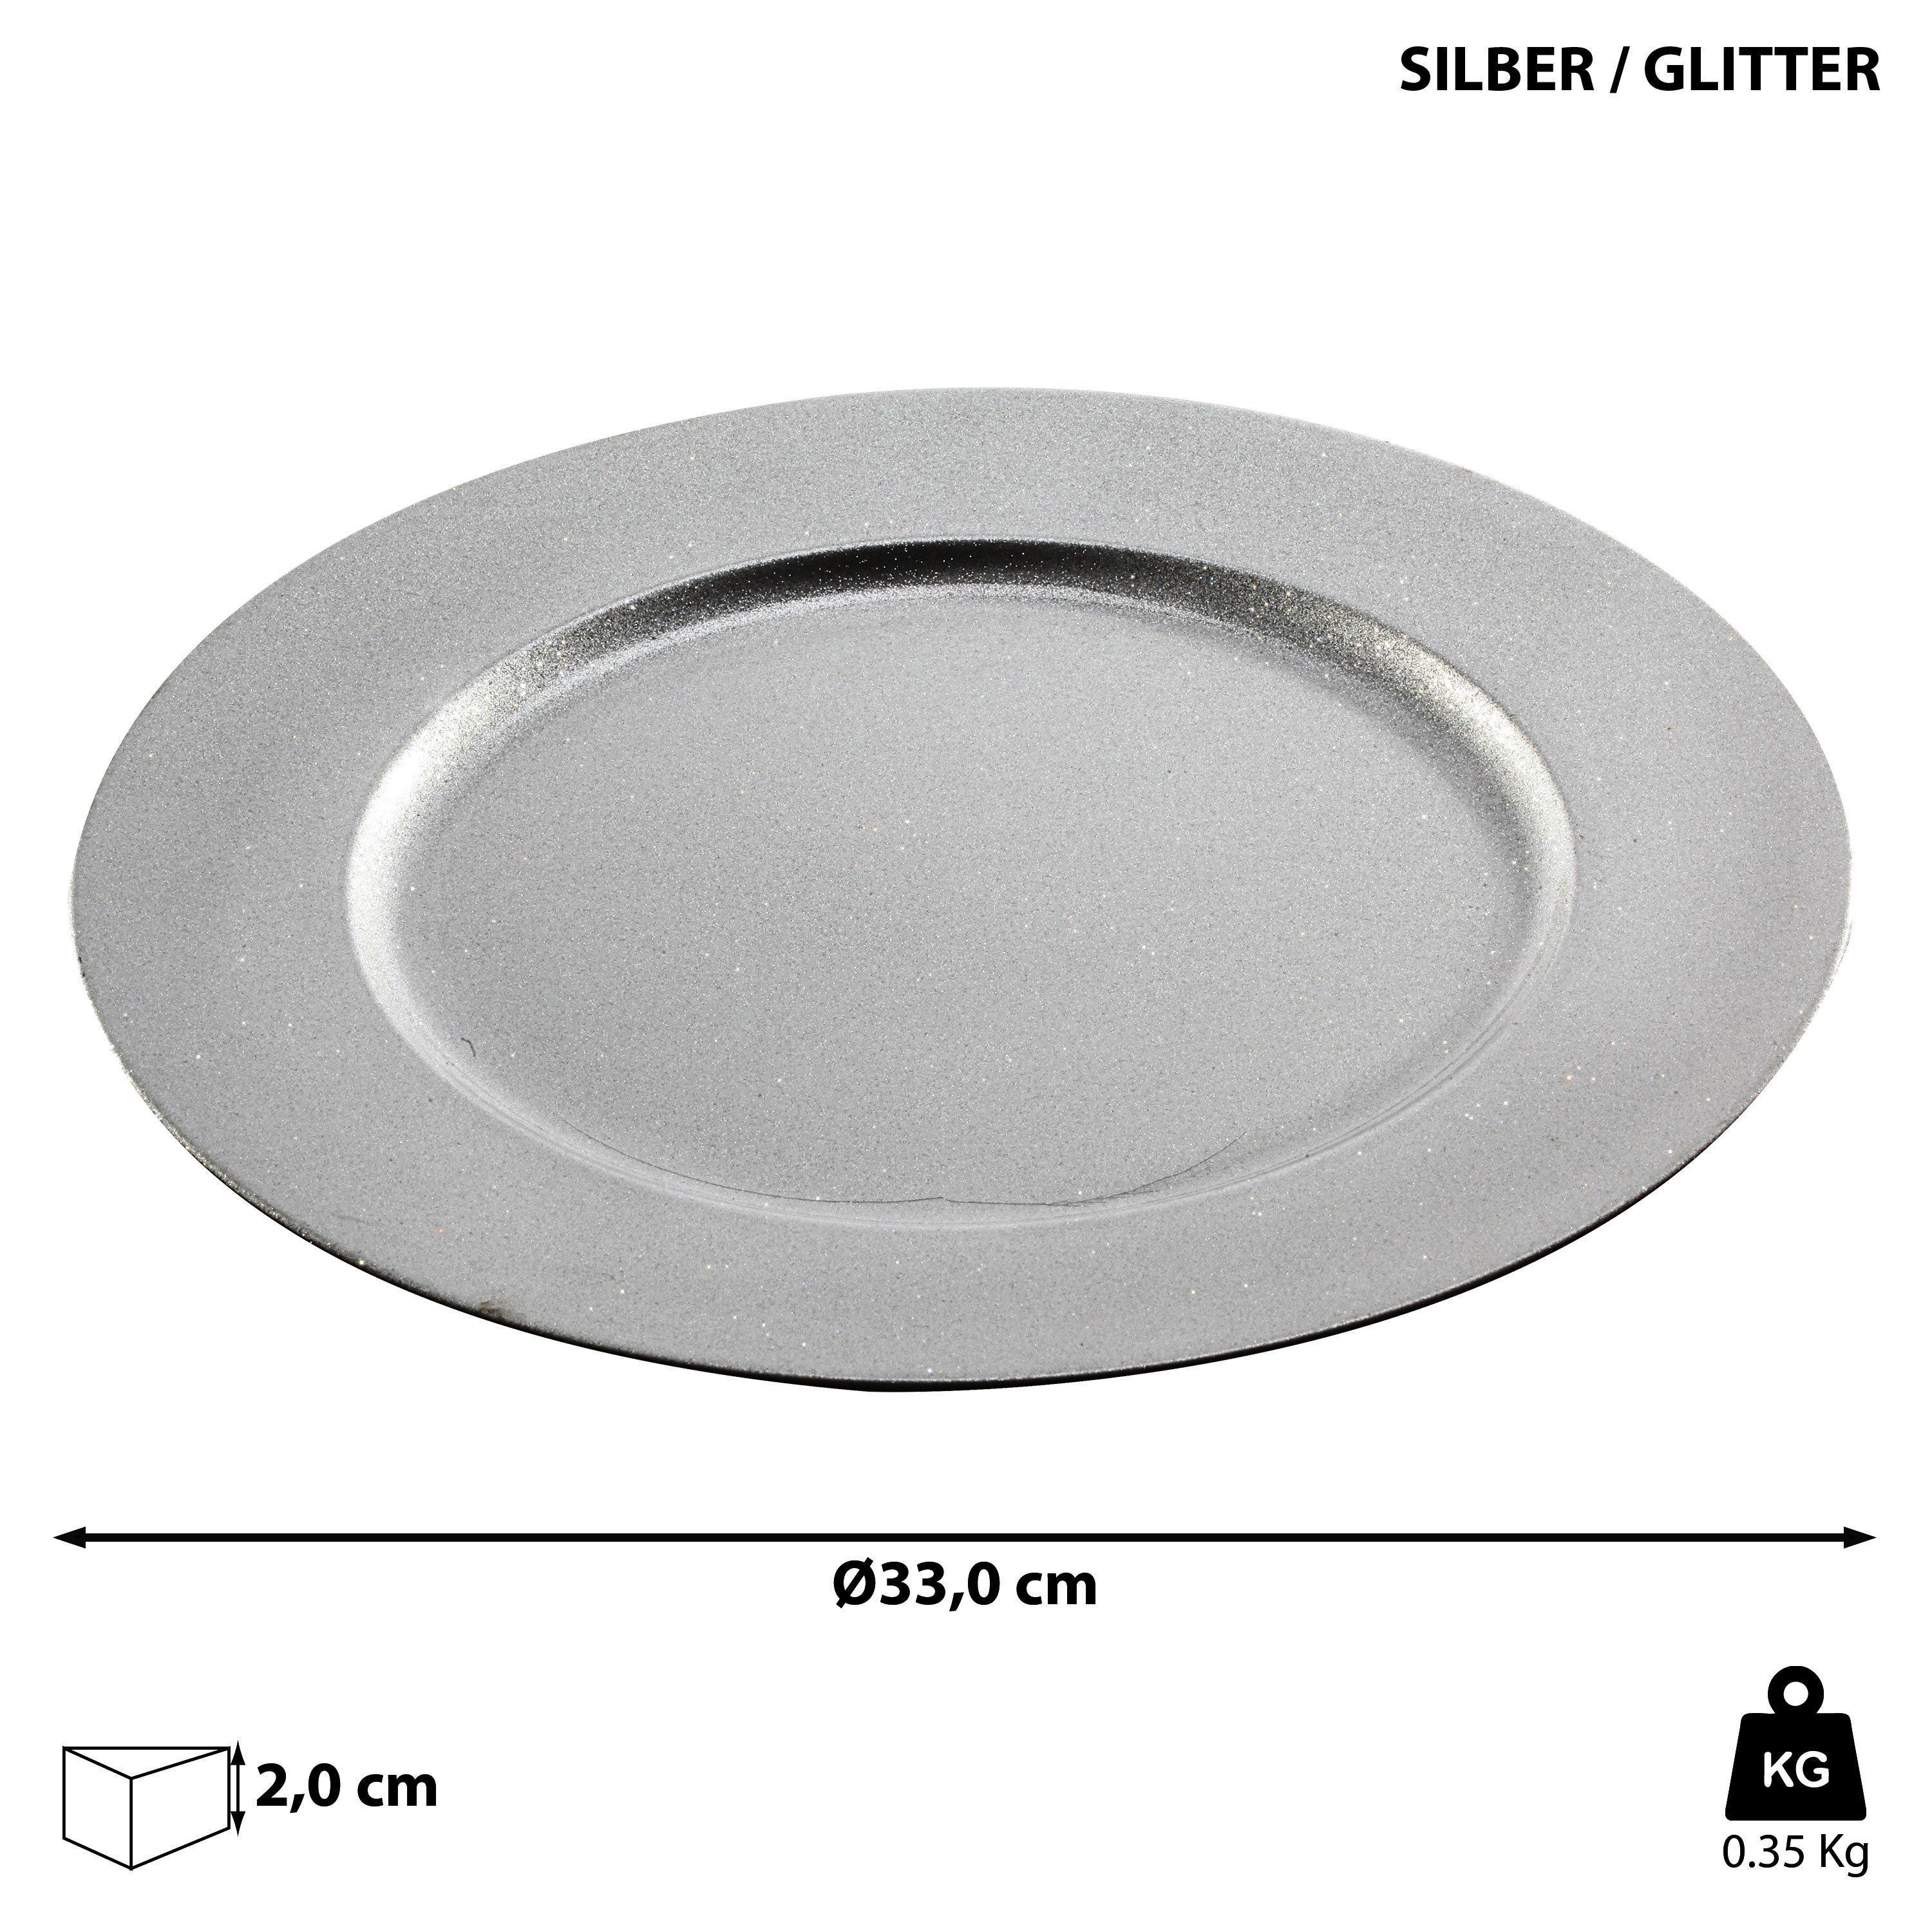 silber 'Glitter' CEPEWA Tablett PVC Glitzer 33cm Kerzen Ø Dekoteller Dekoteller 33cm 1x Teller Platzteller silber